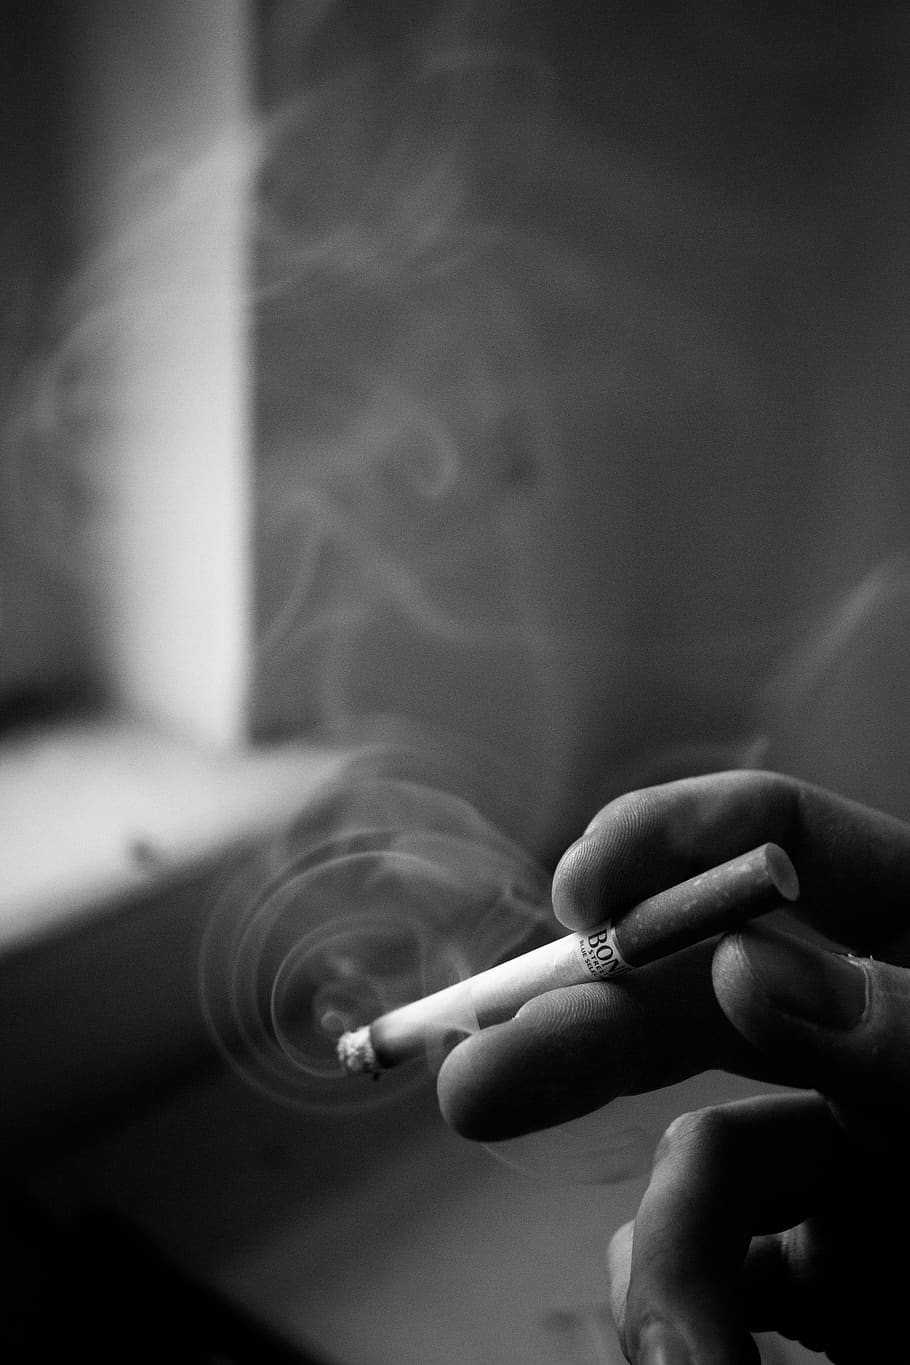 cigarrillo, humo, ventana, otoño, sombra, dedos, mal hábito, problemas de fumar, problemas sociales, tenencia